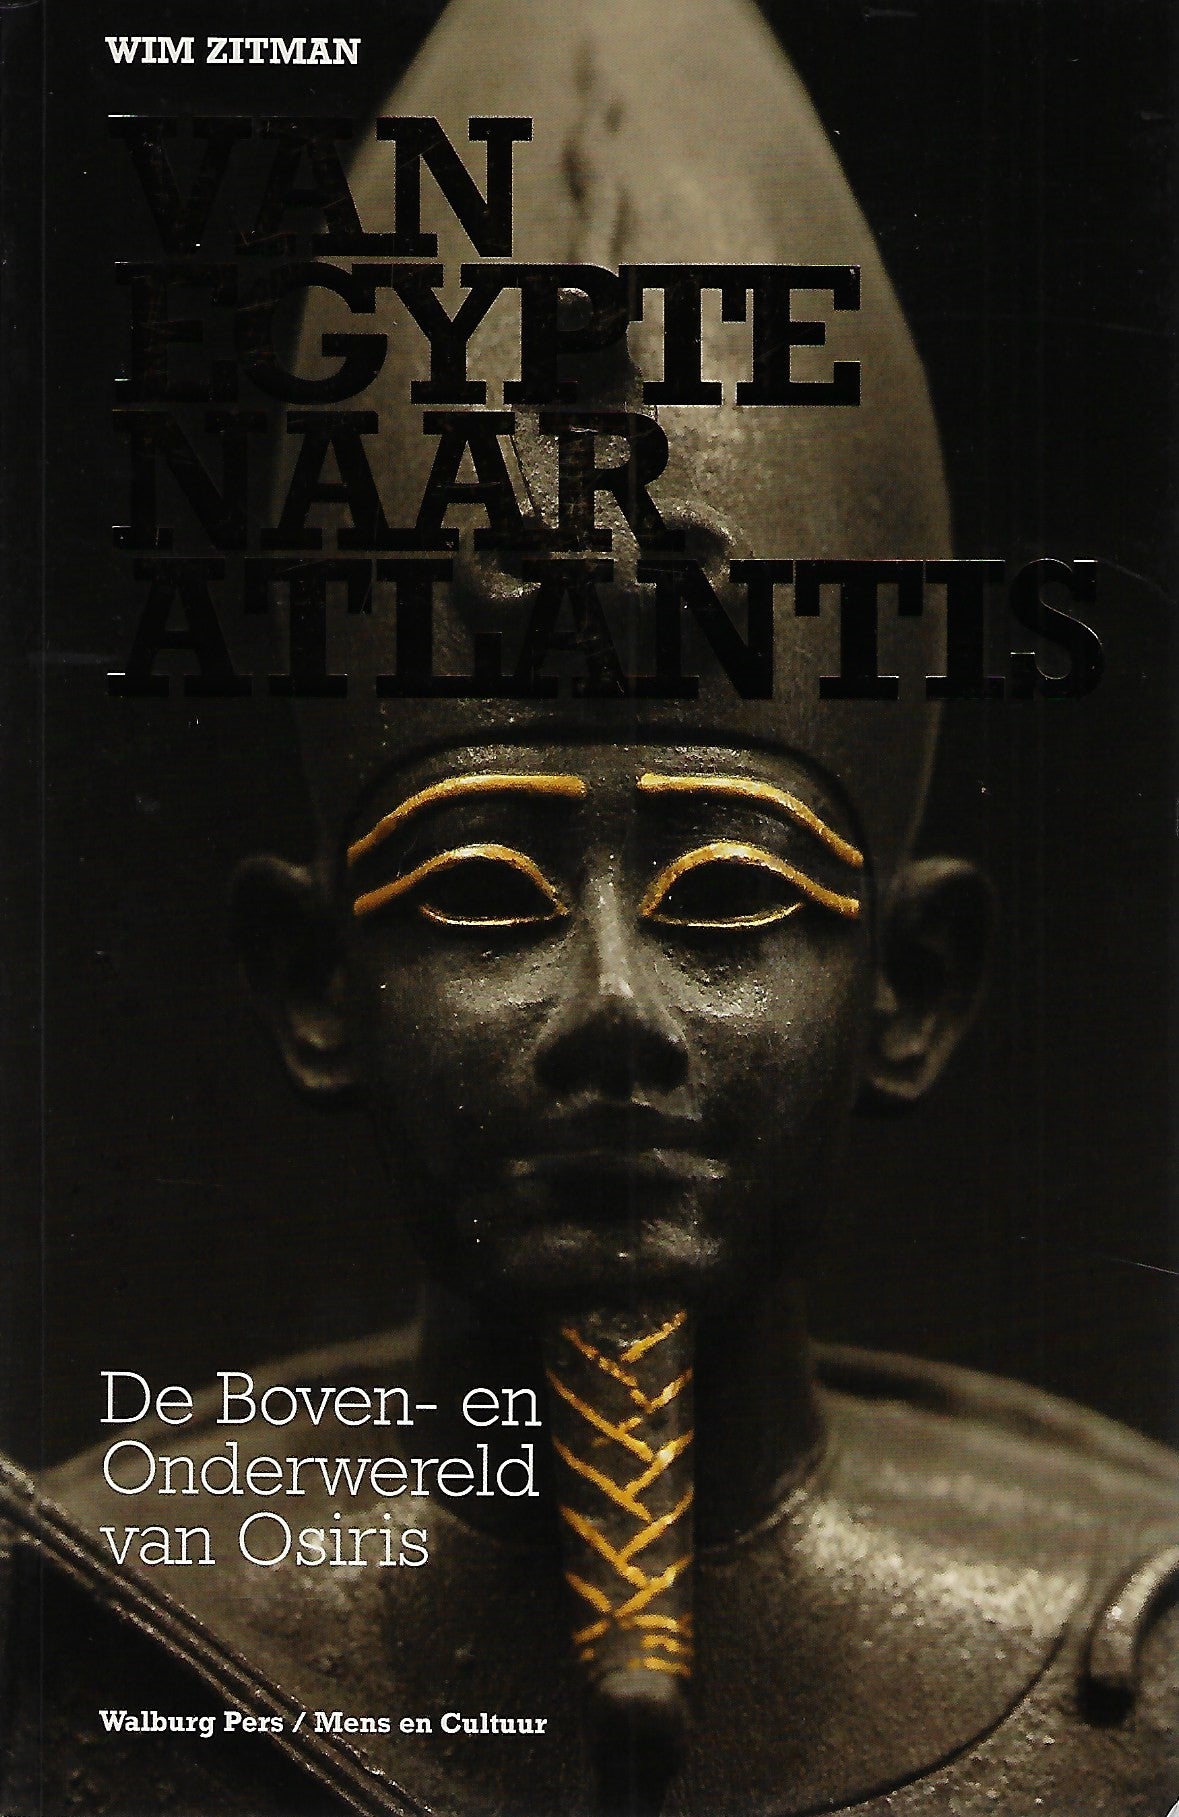 Van Egypte naar Atlantis / de boven- en onderwereld van Osiris